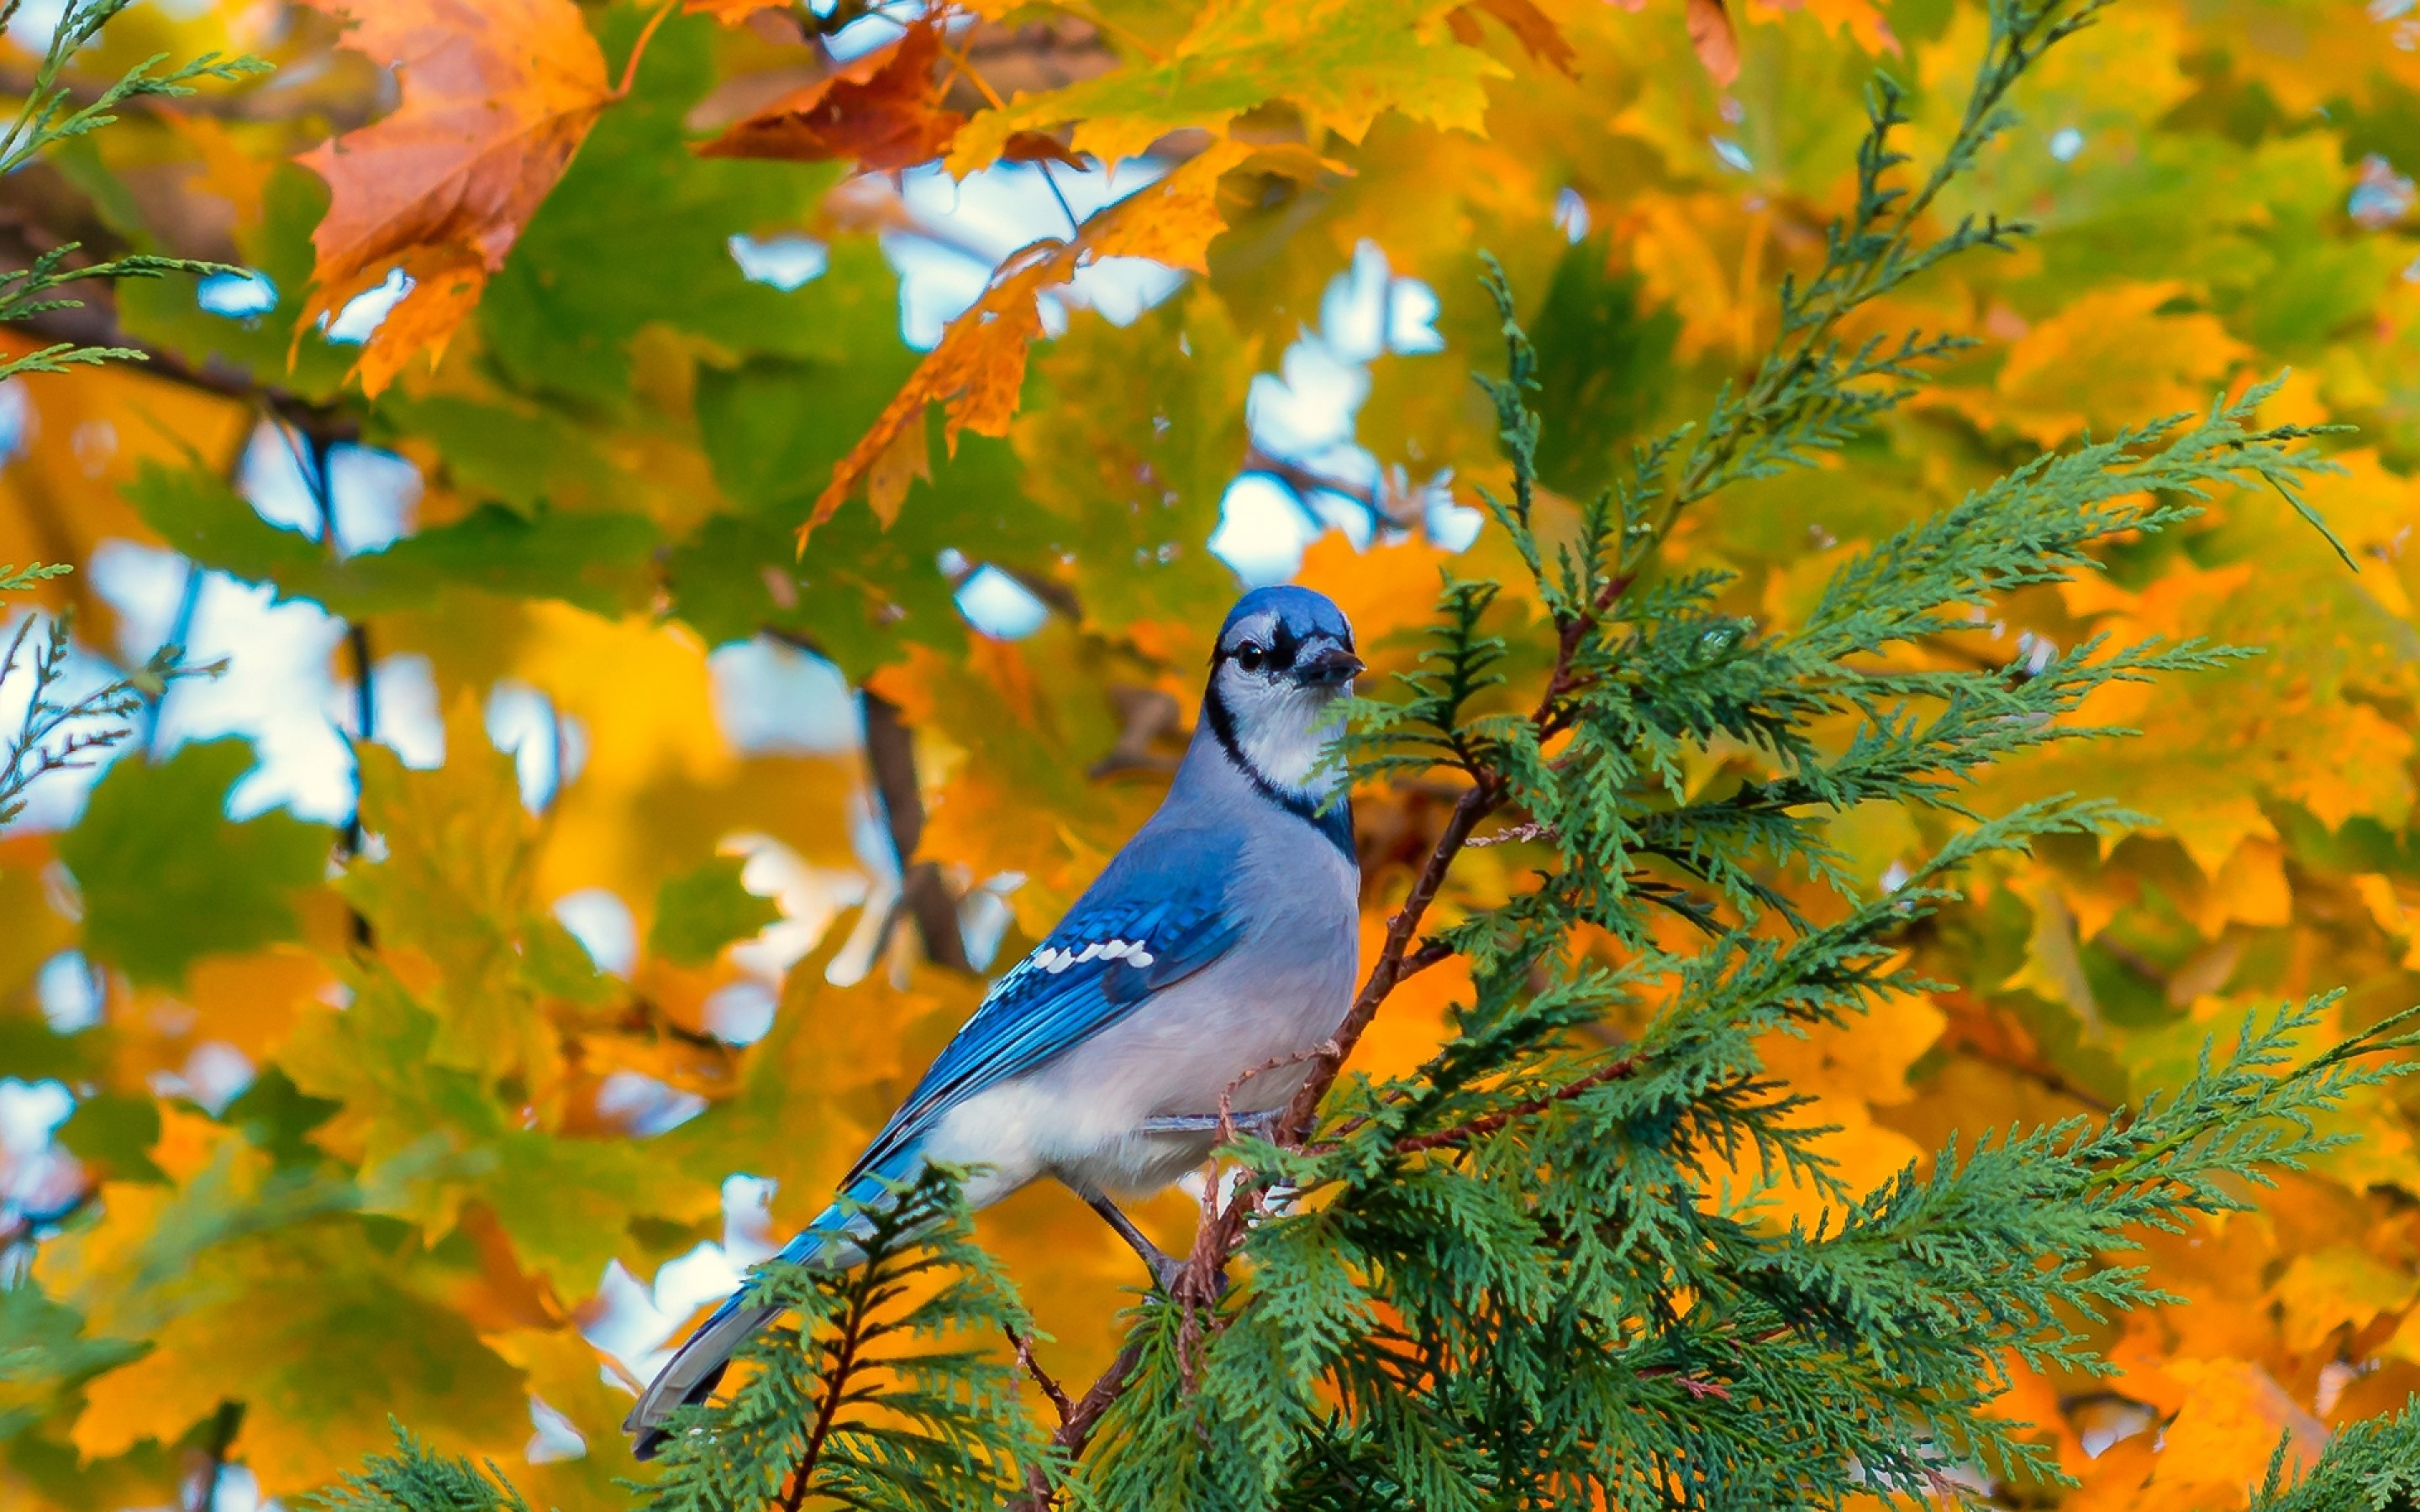 Download 2880x1800 Blue Bird, Tree, Autumn, Standing, Birds Wallpaper for MacBook Pro 15 inch